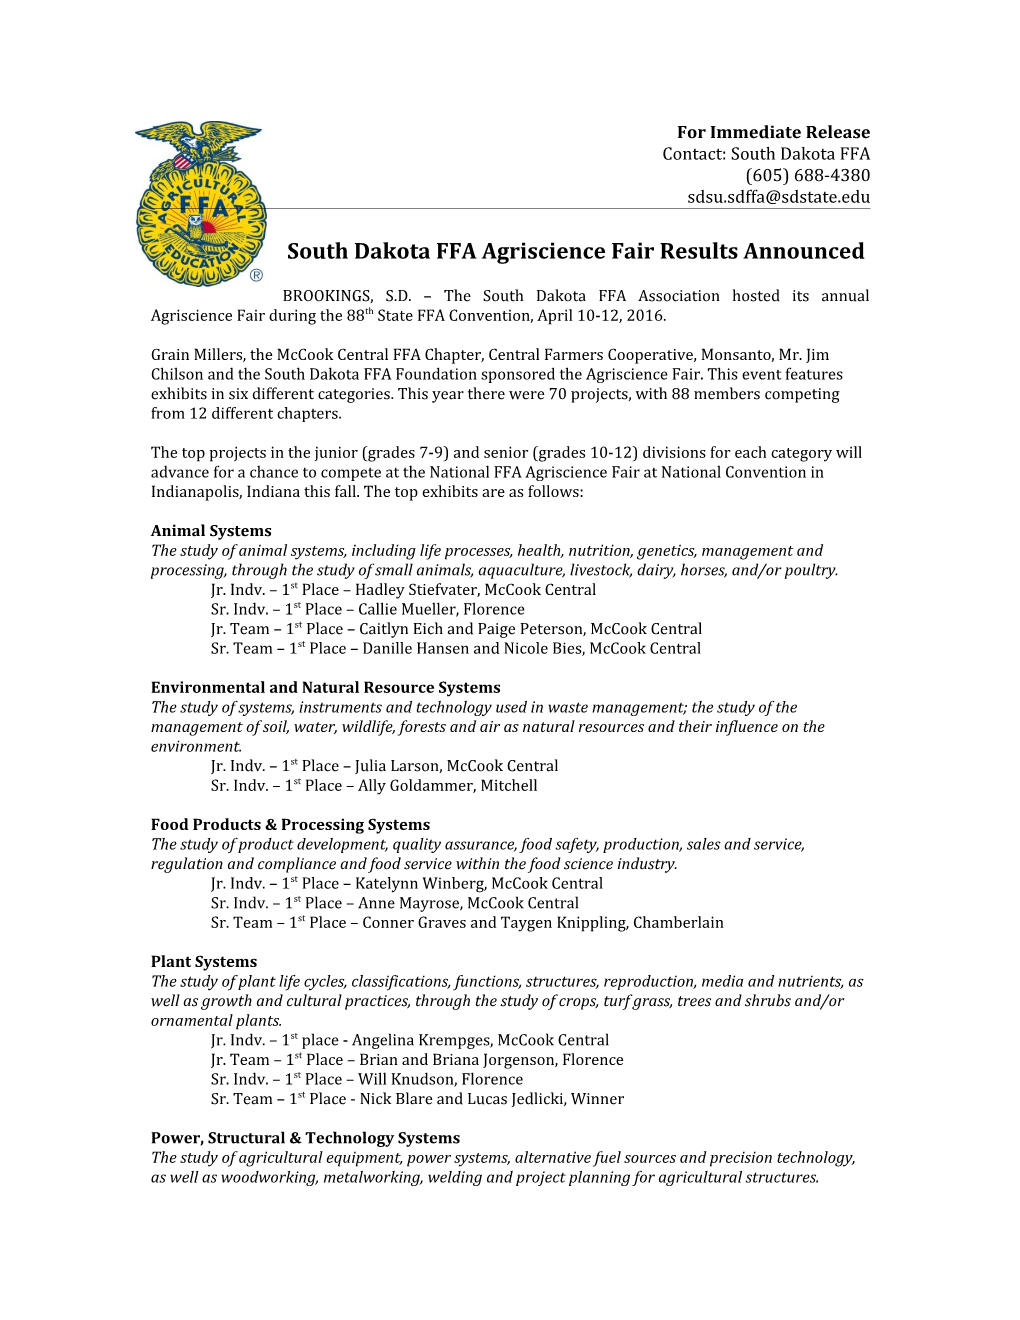 South Dakota FFA Agriscience Fair Results Announced